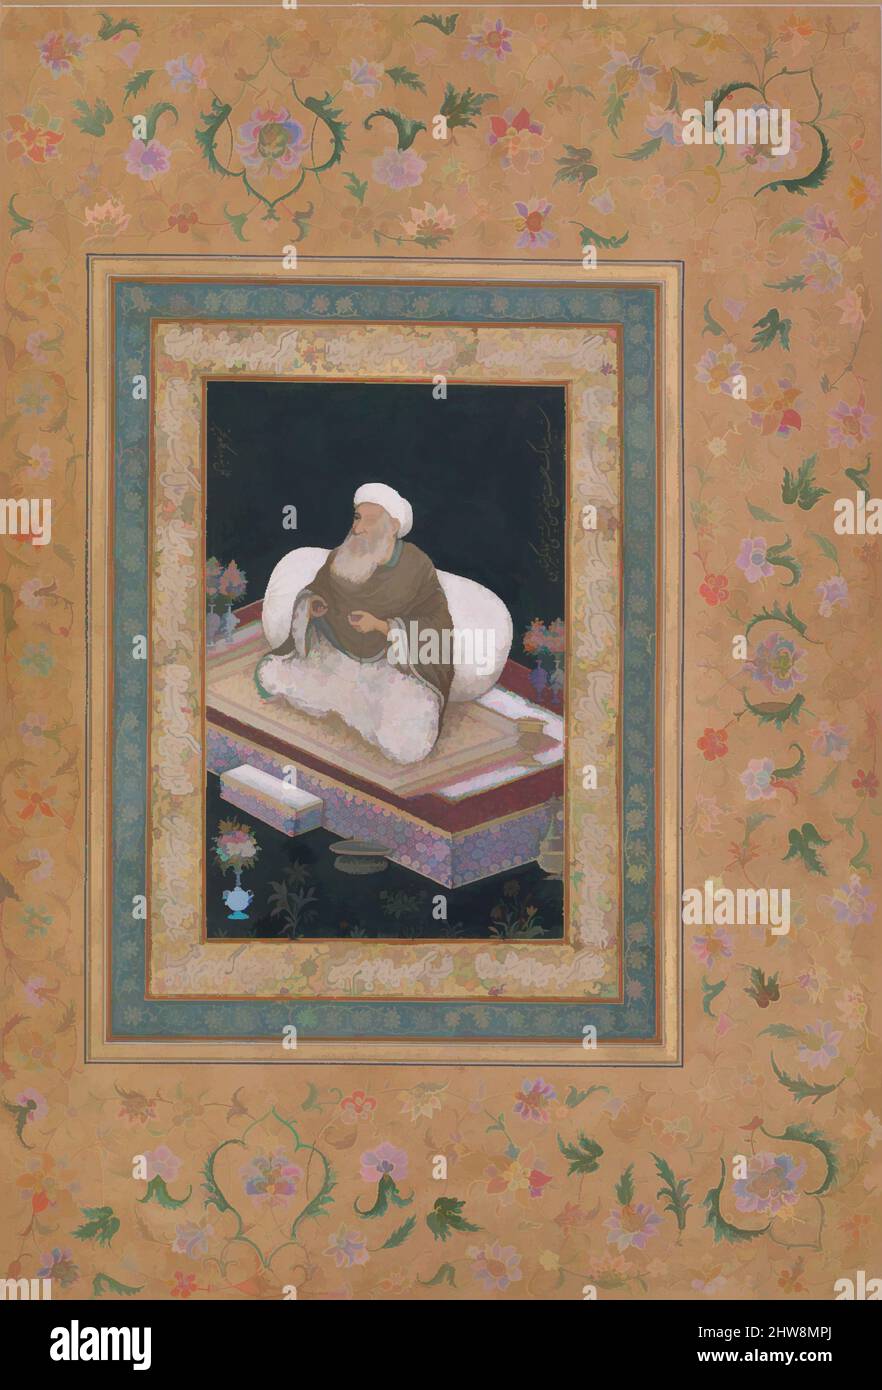 Arte ispirata dal Ritratto di Shaikh Hasan Chishti', Folio dal Shah Jahan Album, recto e verso: Inizio 19th secolo, attribuito a India, inchiostro, acquerello opaco, e oro su carta, H. 15 1/8 pollici. (38. 4 cm), Codices, questo ritratto di un sufi è identificato lungo il bordo destro come, opere classiche modernizzate da Artotop con un tuffo di modernità. Forme, colore e valore, impatto visivo accattivante sulle emozioni artistiche attraverso la libertà delle opere d'arte in modo contemporaneo. Un messaggio senza tempo che persegue una nuova direzione selvaggiamente creativa. Artisti che si rivolgono al supporto digitale e creano l'NFT Artotop Foto Stock